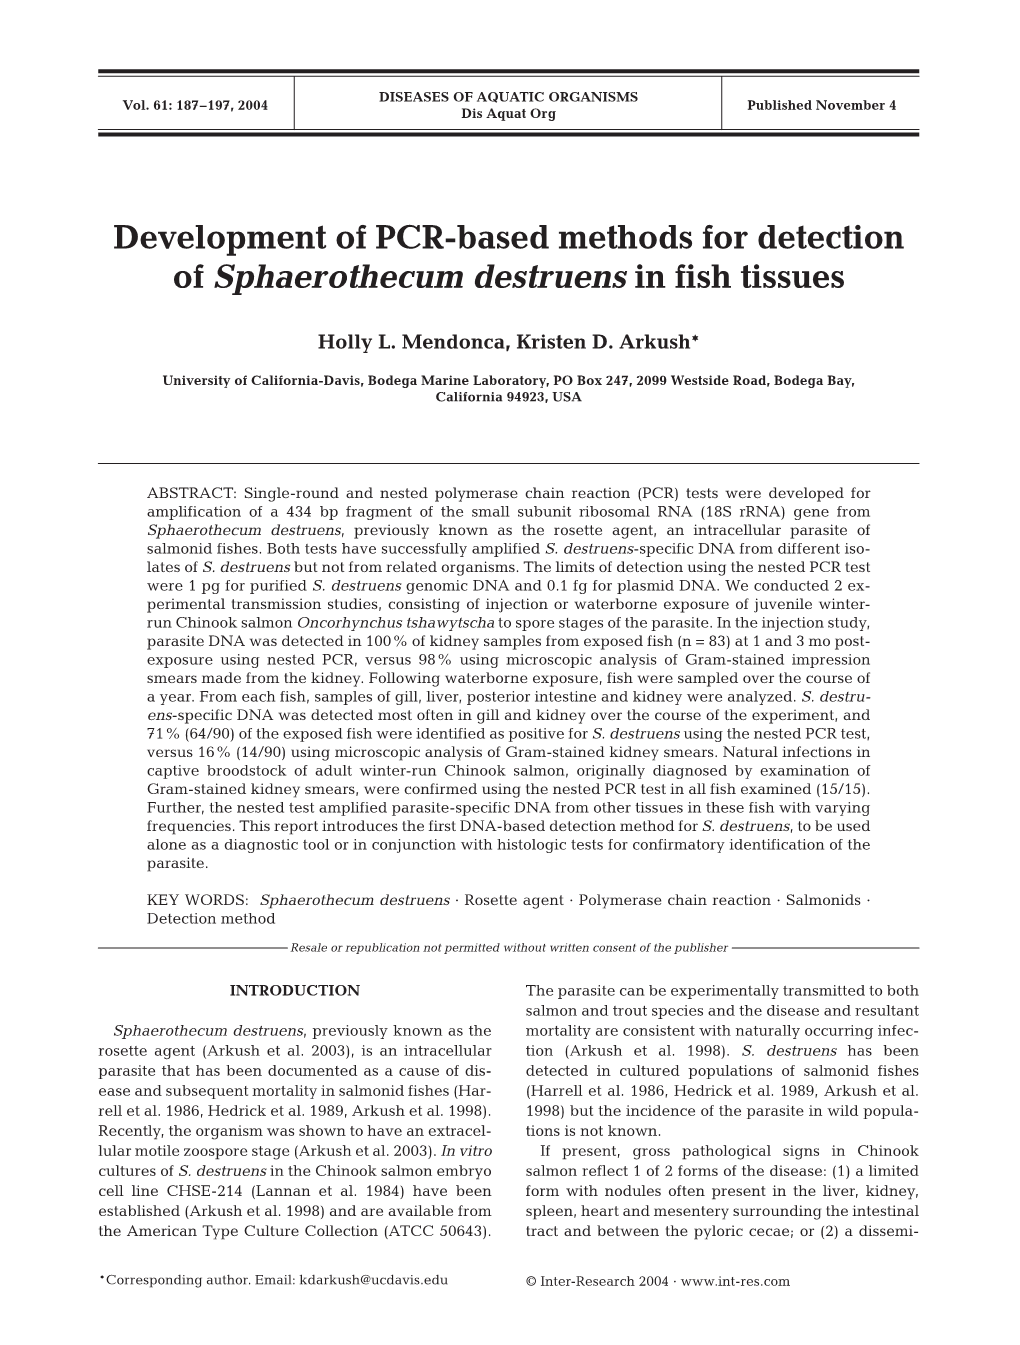 Development of PCR-Based Methods for Detection of Sphaerothecum Destruens in Fish Tissues